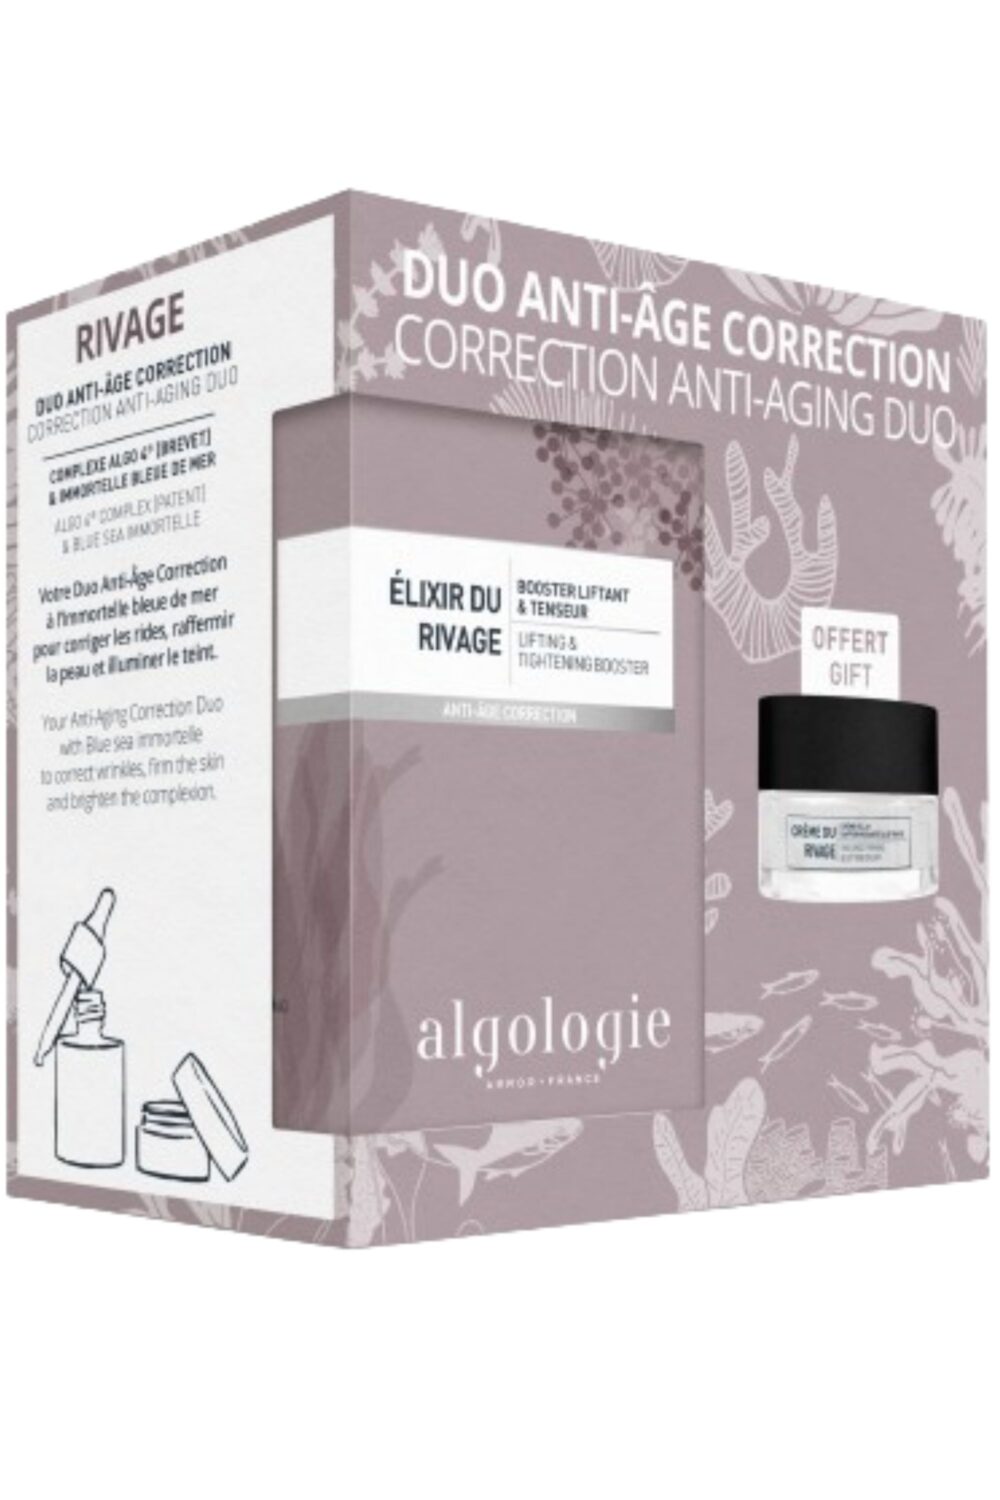 Algologie - Duo Anti-Age Correction avec crème du rivage offerte